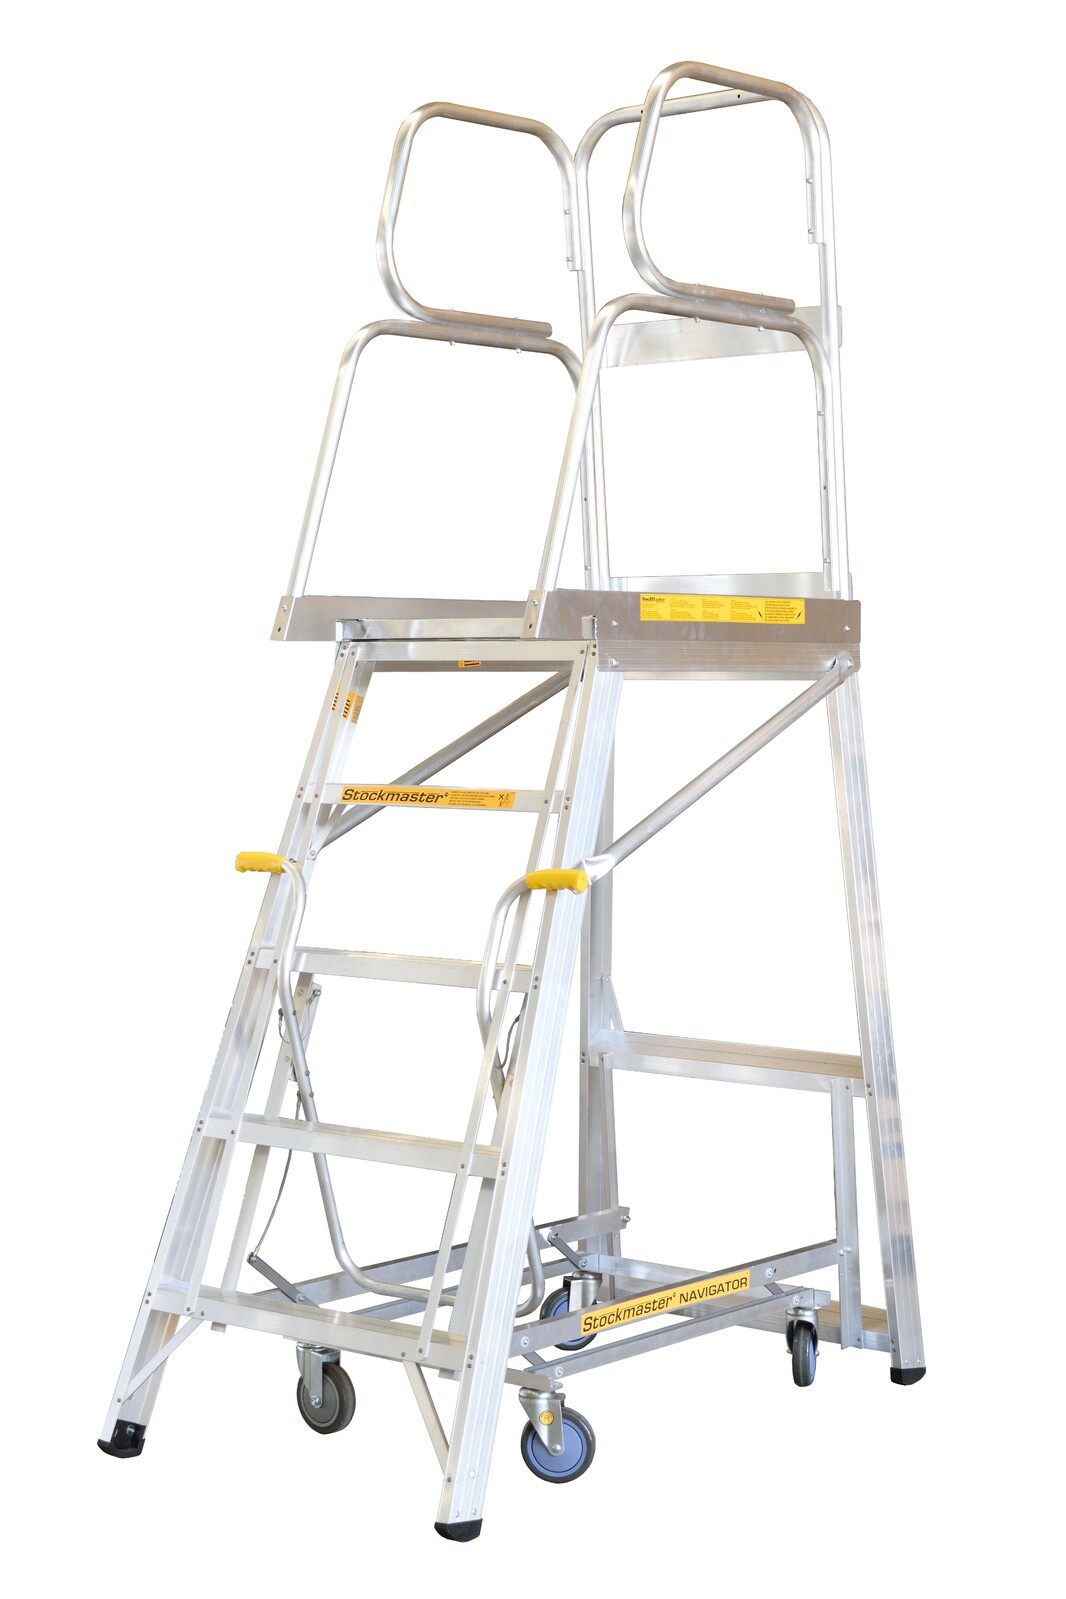 Stockmaster 150kg Rated Mobile Work Platform Ladder Navigator - 2m